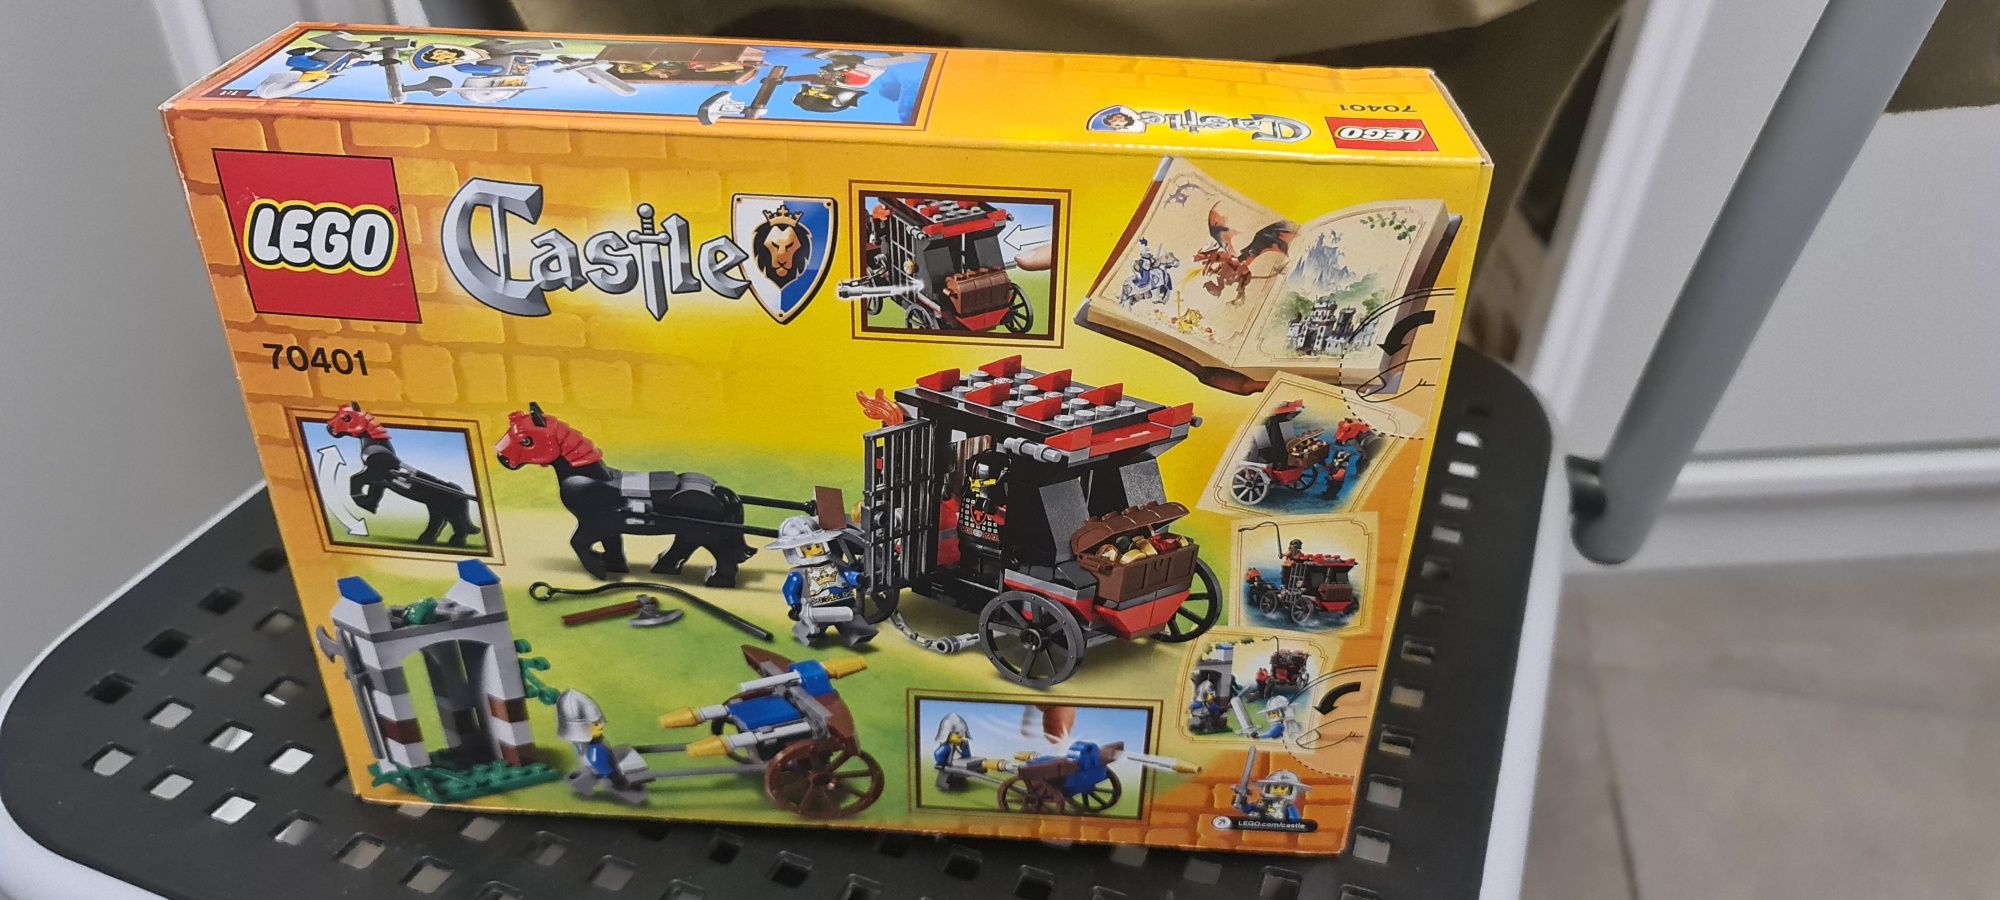 Lego castle set 70401